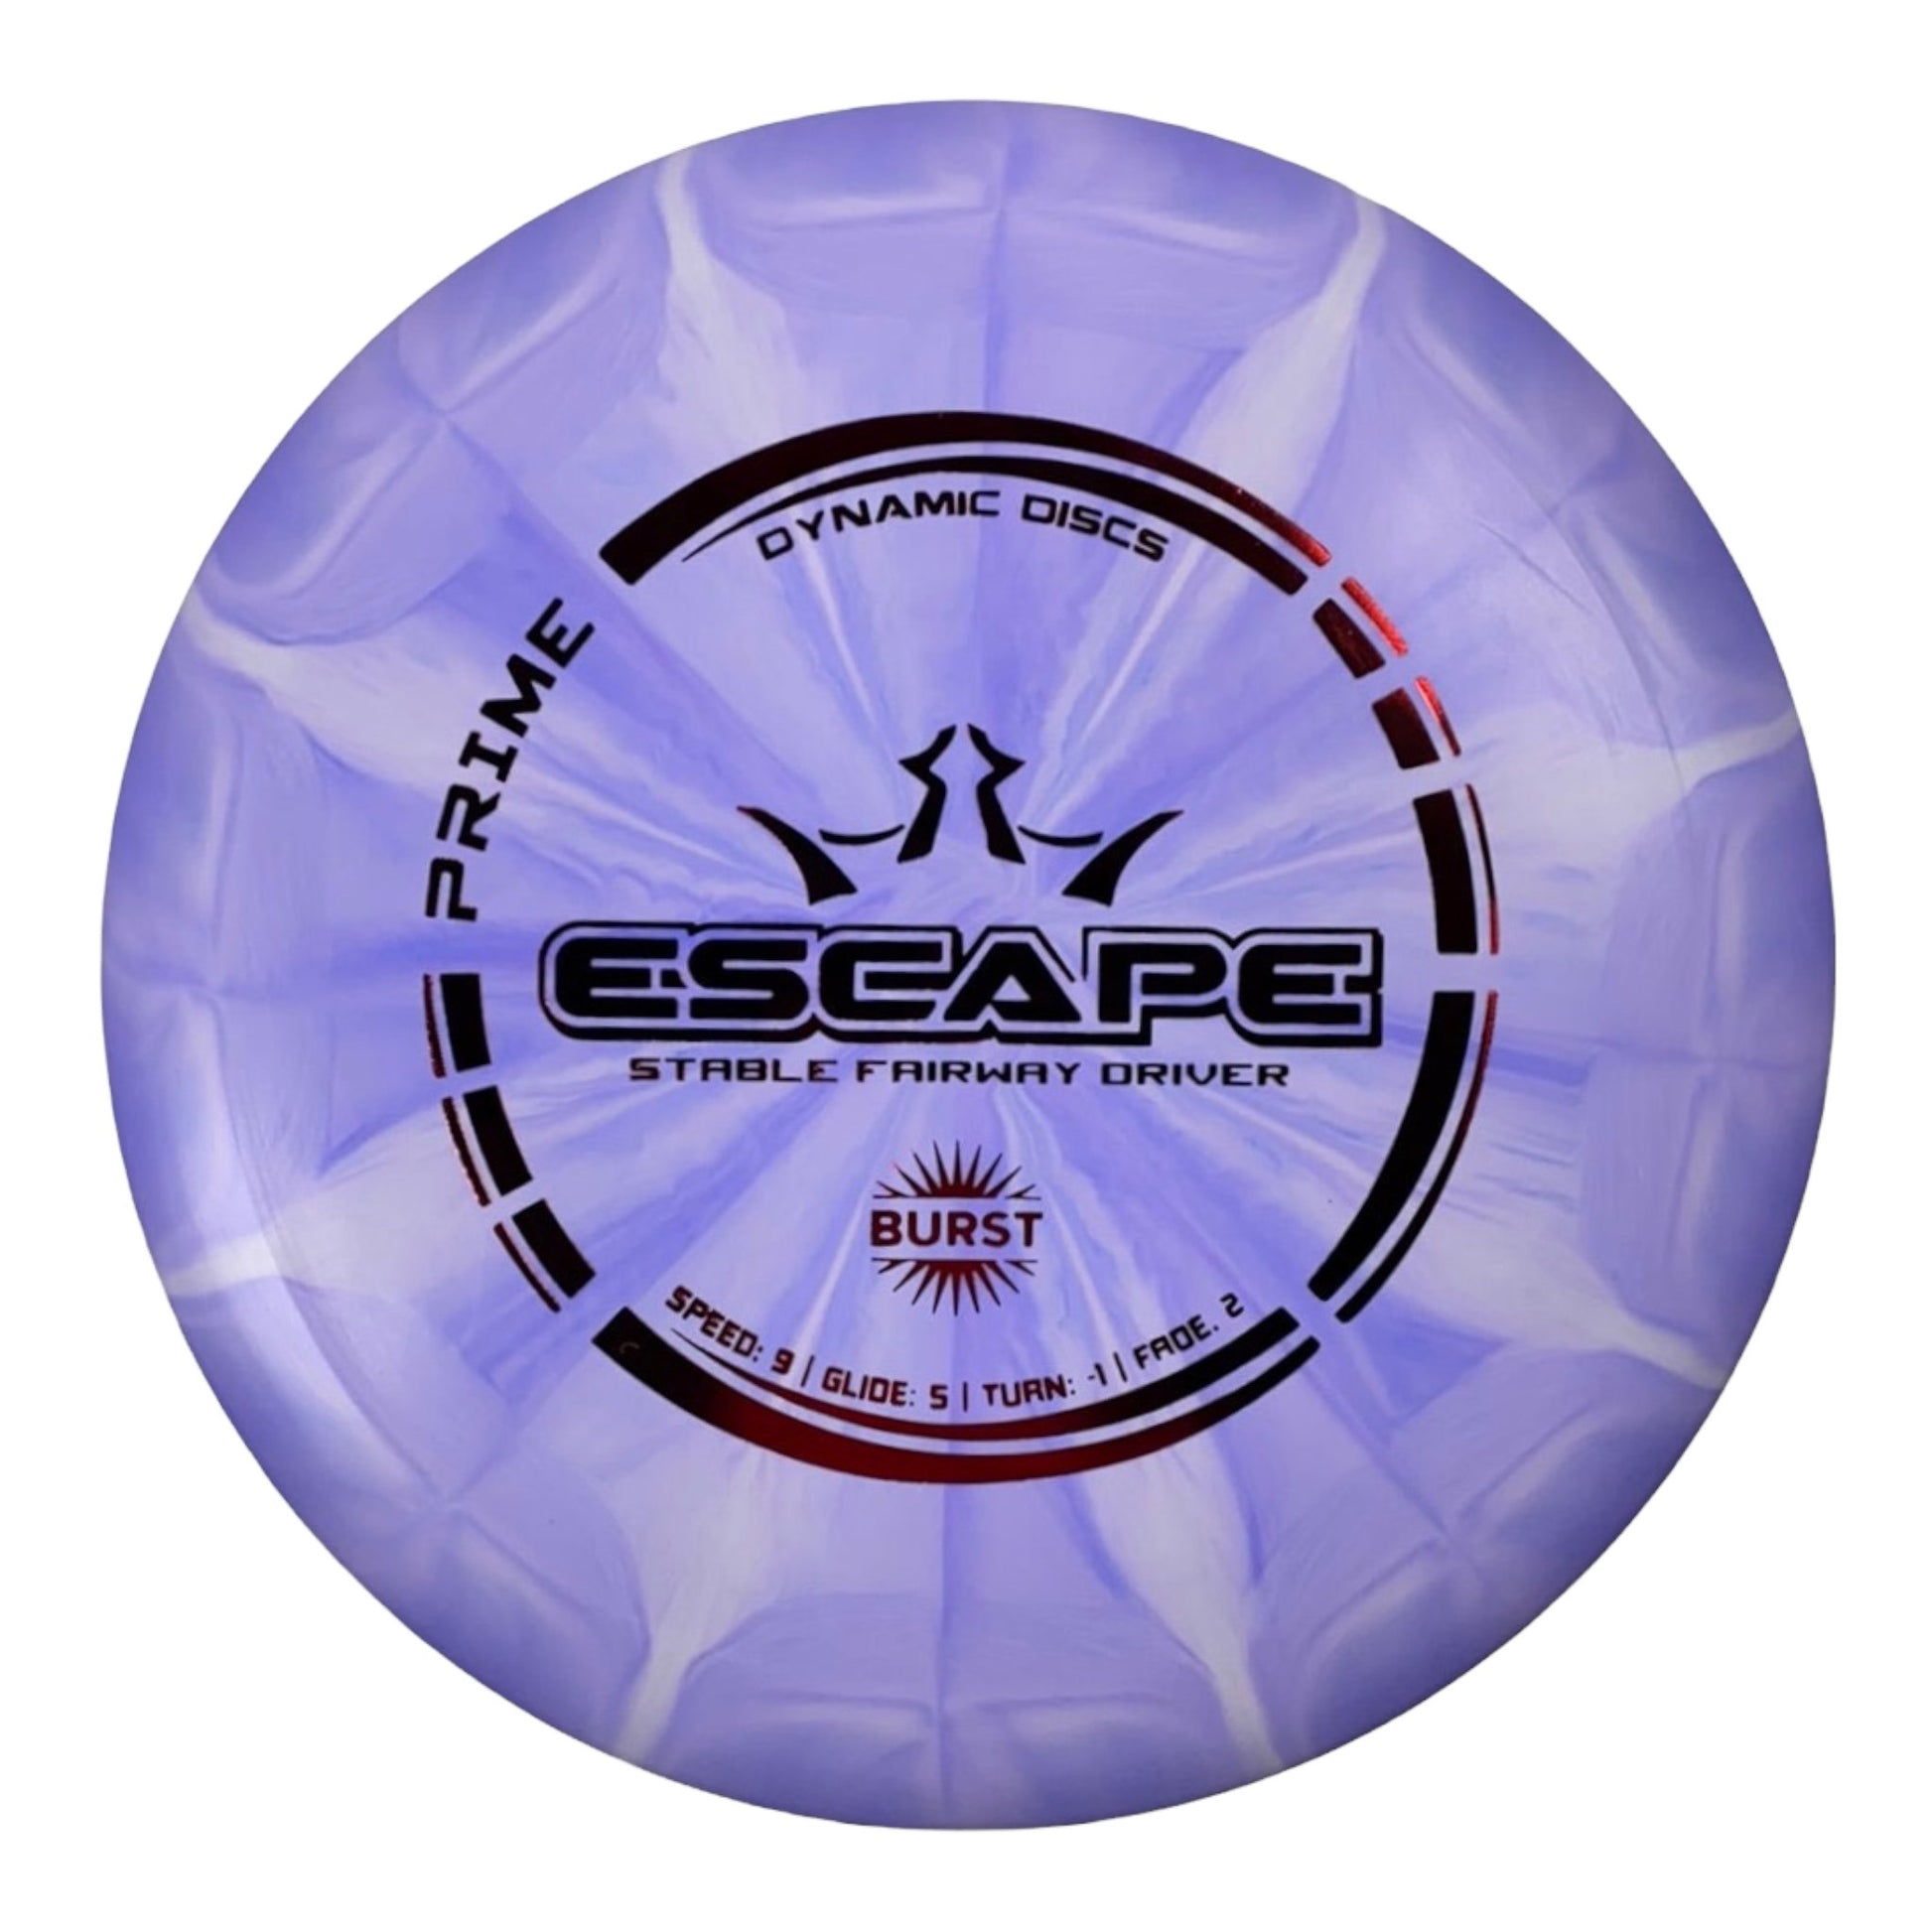 Dynamic Discs Escape | Prime Burst | Purple/Red 172-173g Disc Golf